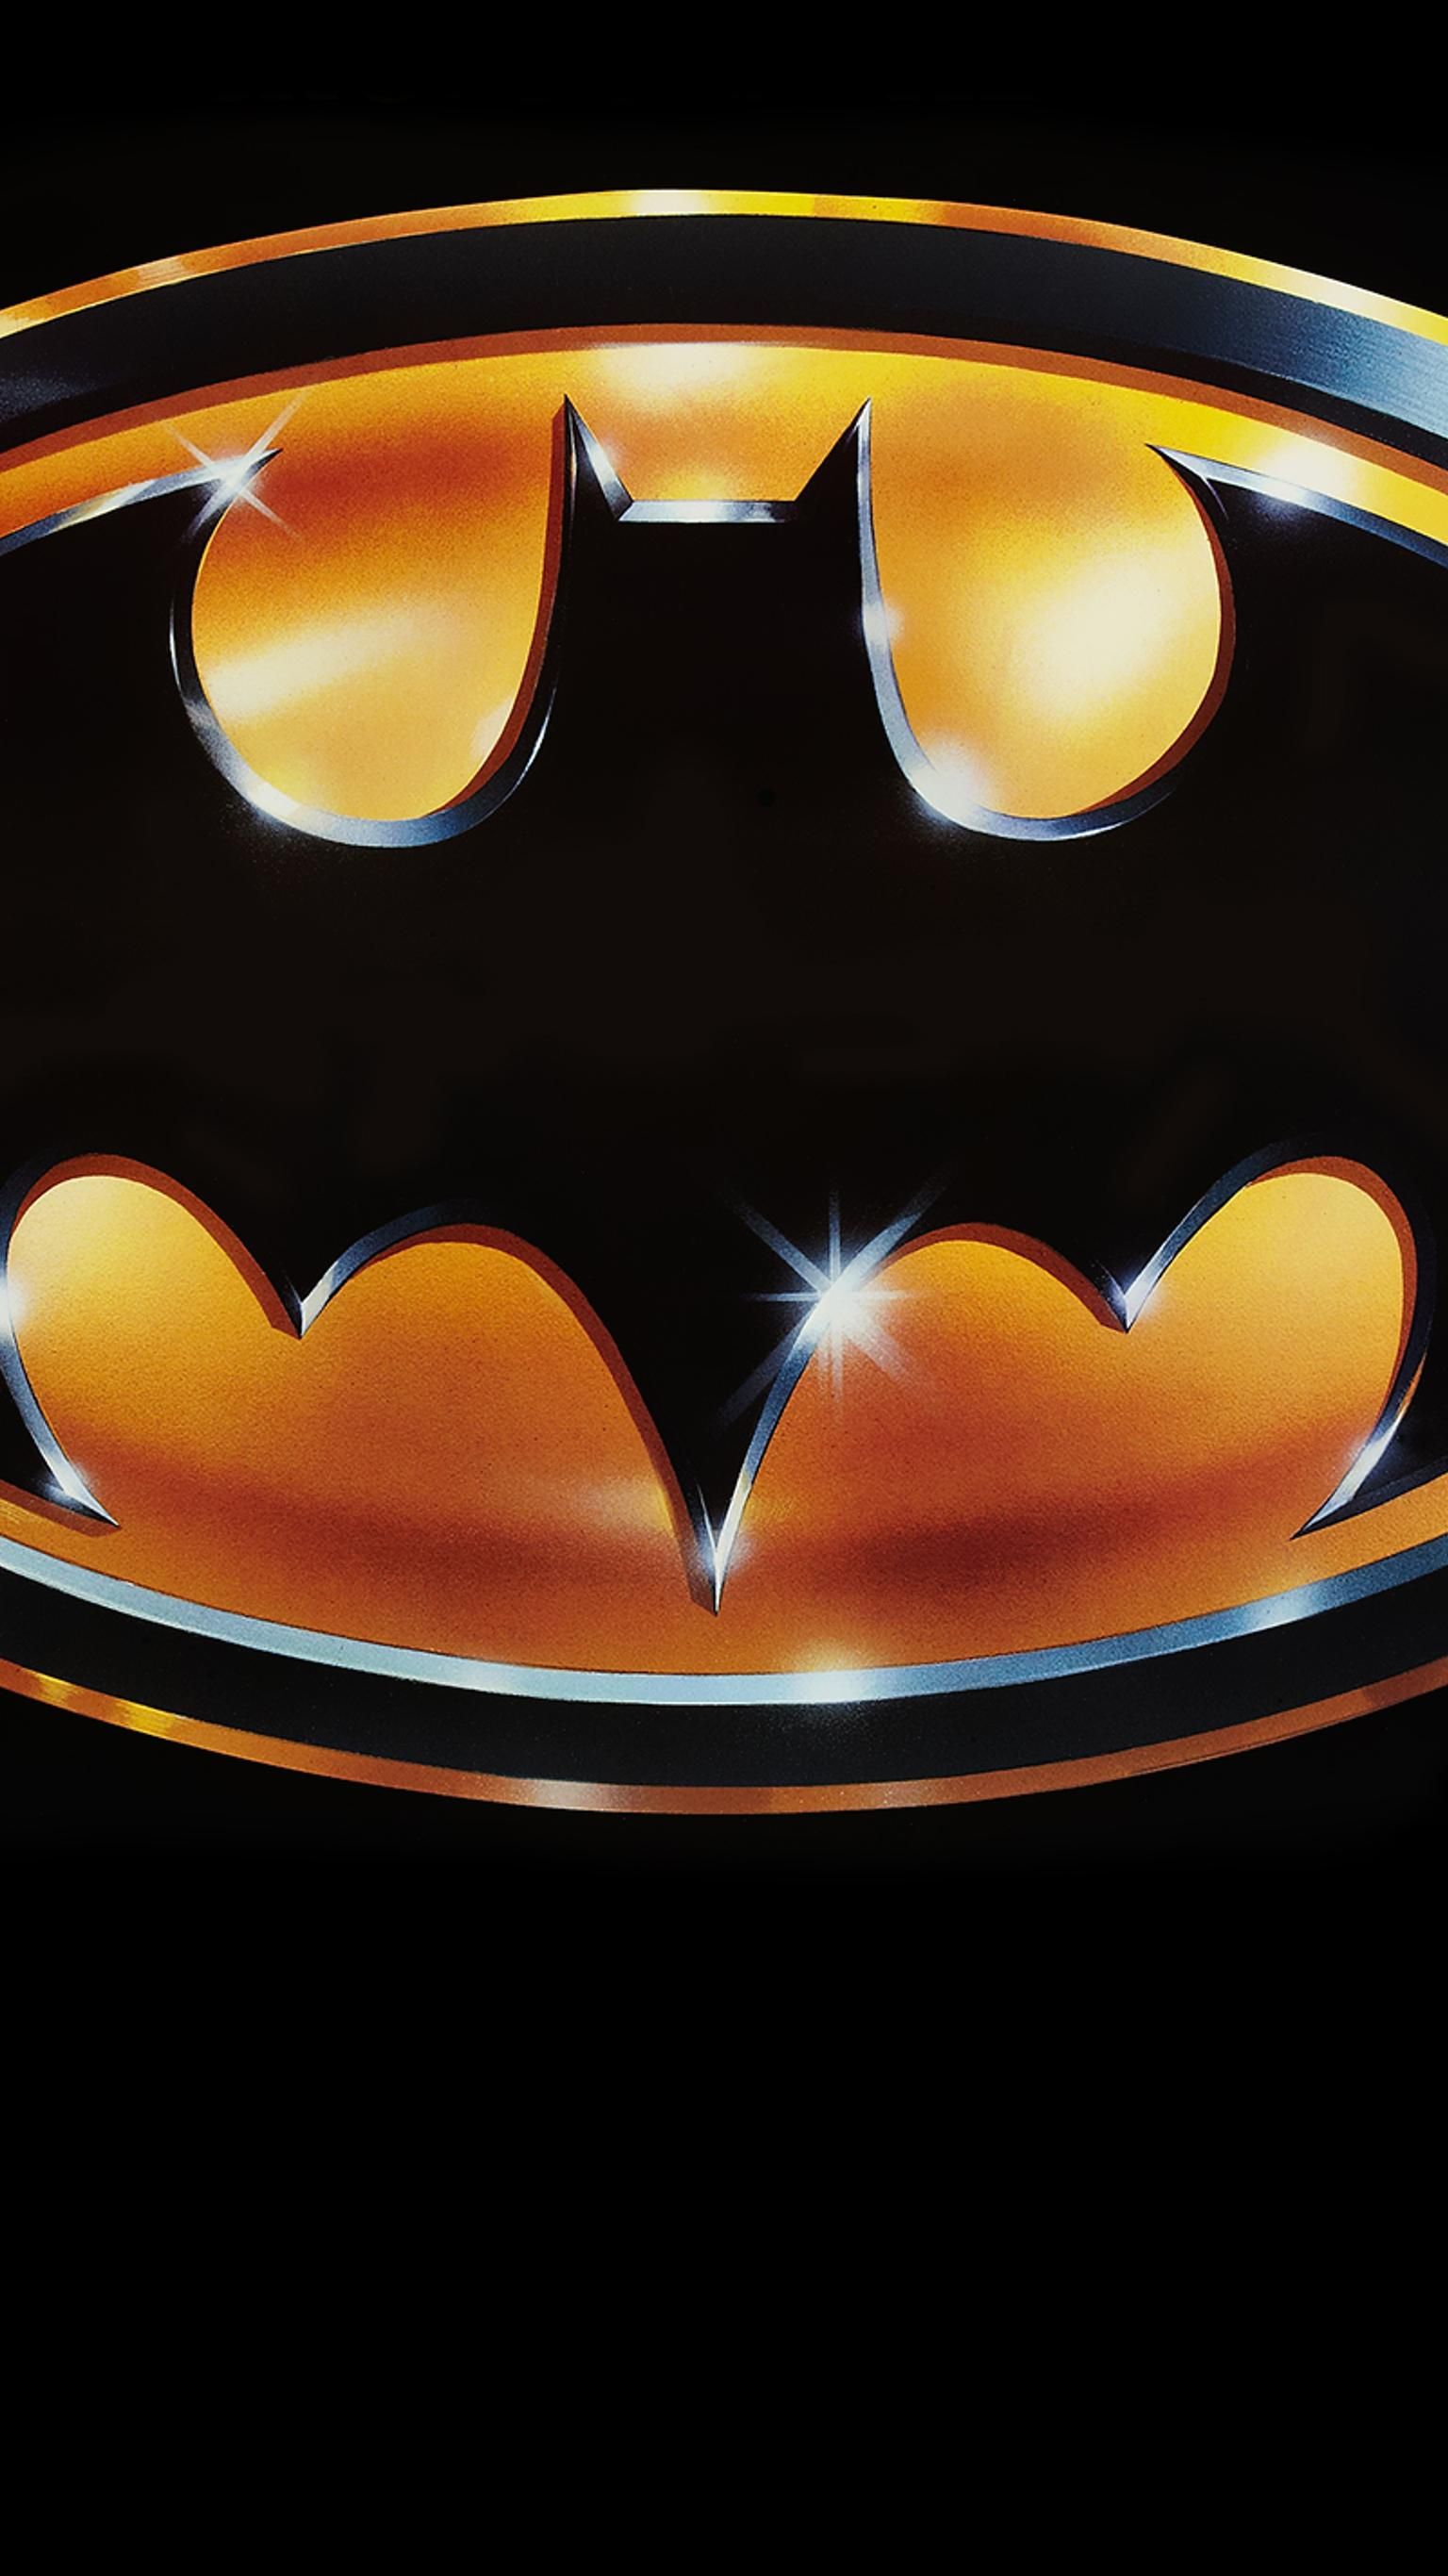 Batman (1989) Phone Wallpaper. Moviemania. Batman wallpaper, Batman background, Batman joker wallpaper